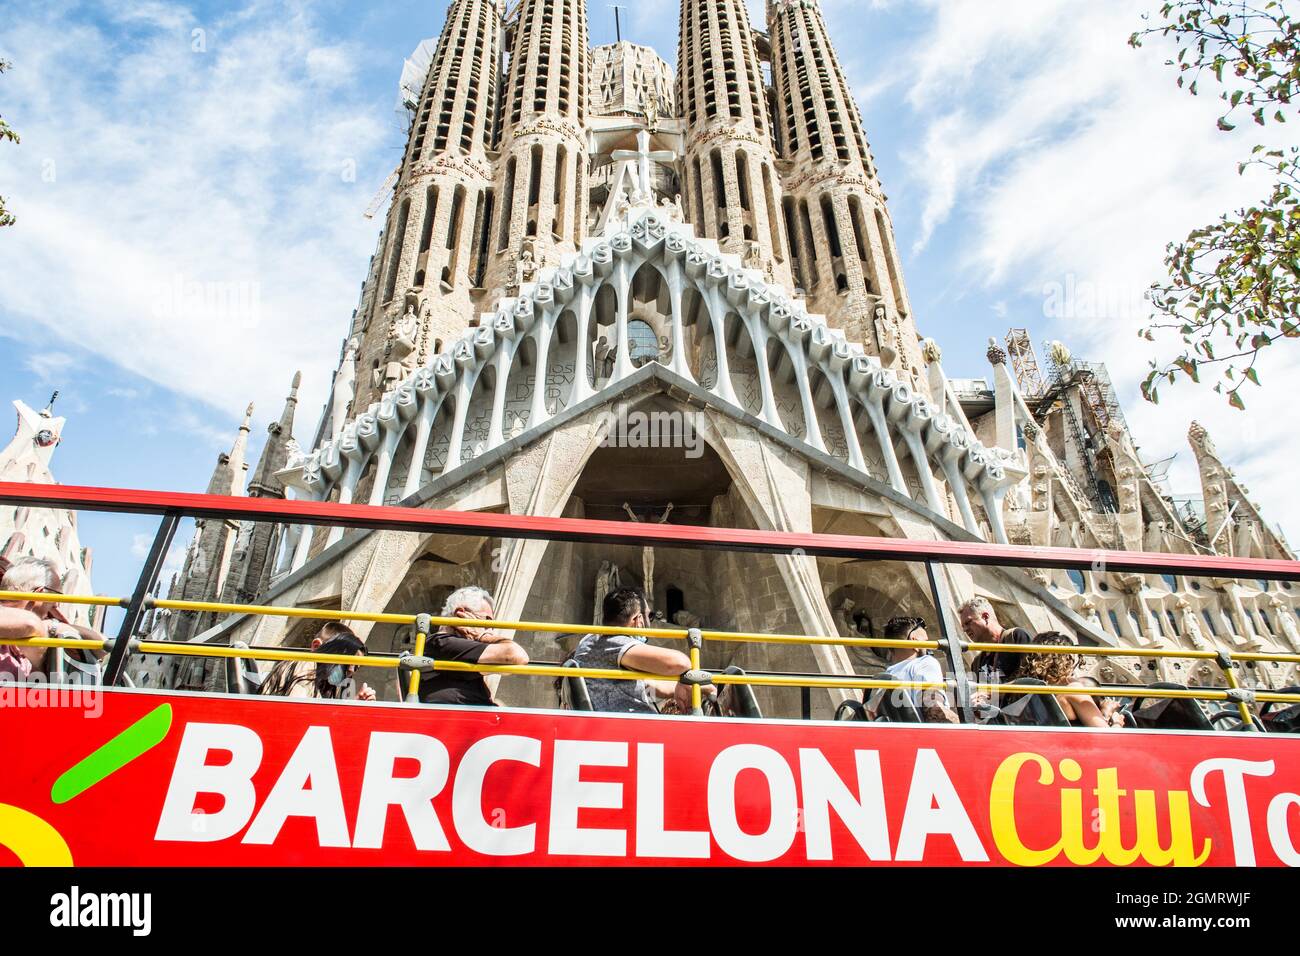 Barcelone, Catalogne, Espagne. 20 septembre 2021. Le bus de la visite de la ville de Barcelone est visible en face de la basilique de la Sagrada família à Barcelone. (Image de crédit : © Thiago Prudencio/DAX via ZUMA Press Wire) Banque D'Images